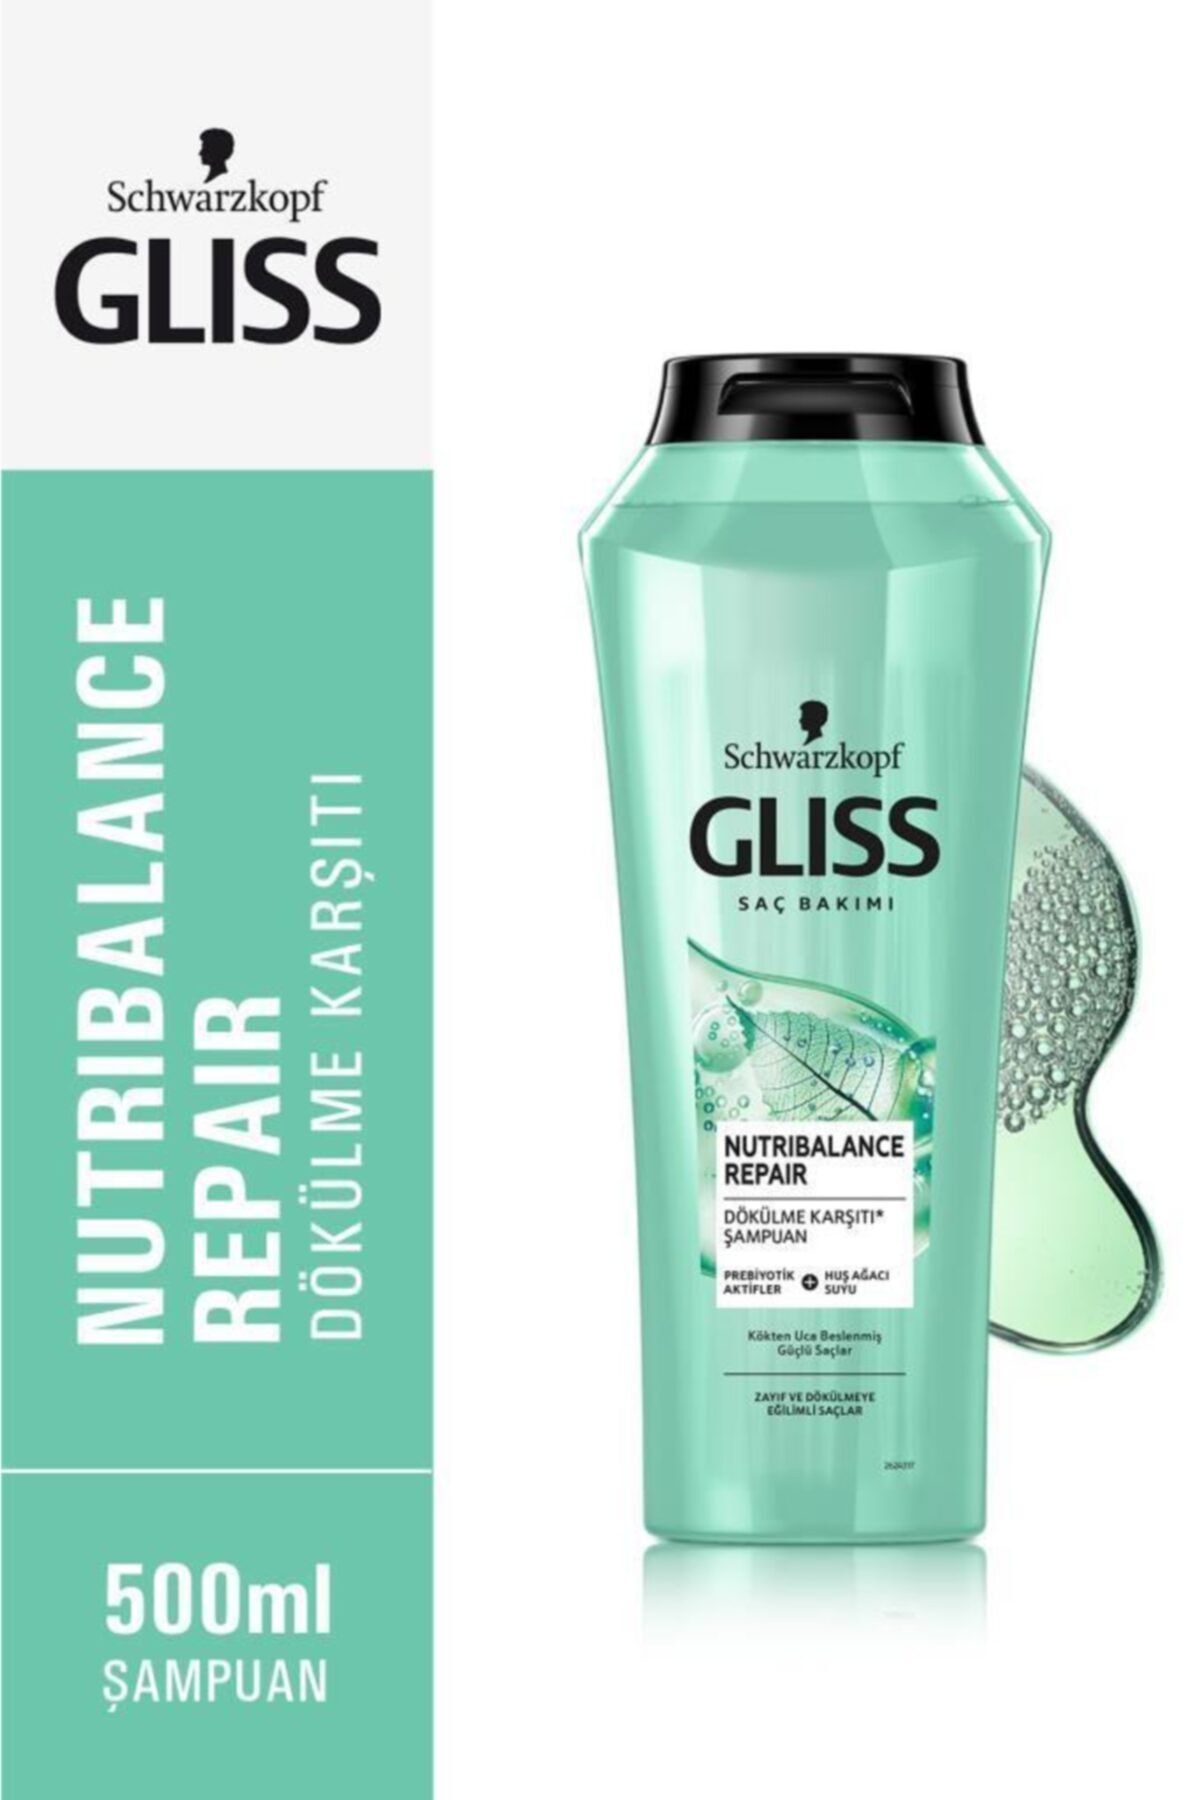 Gliss Nutribalance Repair Dökülme Karşıtı Şampuan - Prebiyotik Aktifler Ve Huş Ağacı Suyu Ile 500 ml